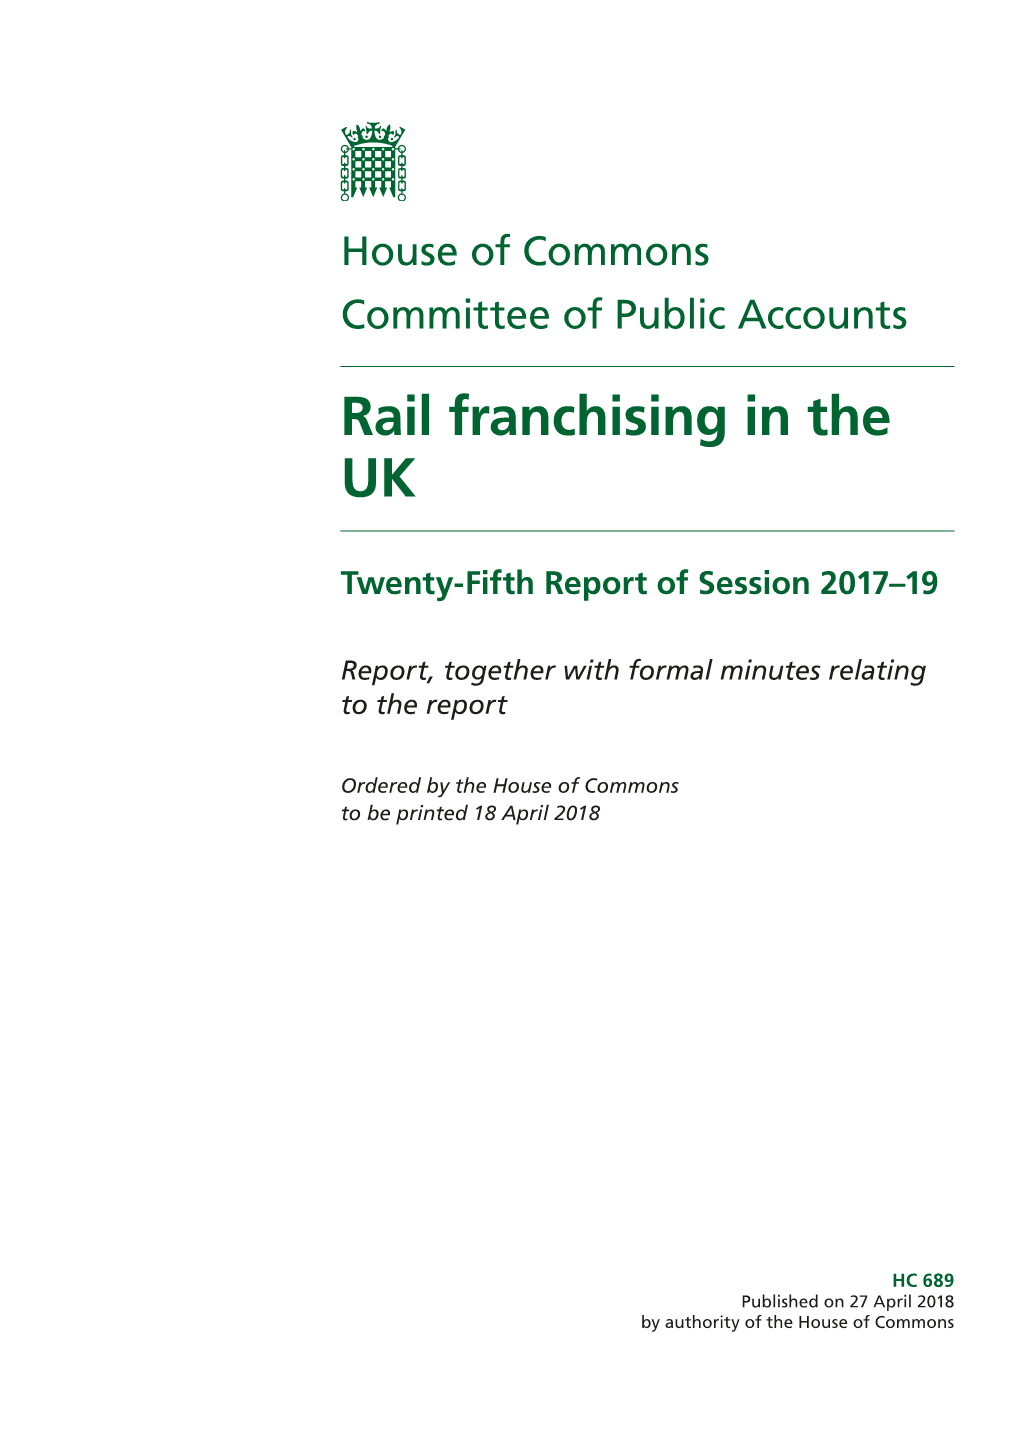 Rail Franchising in the UK